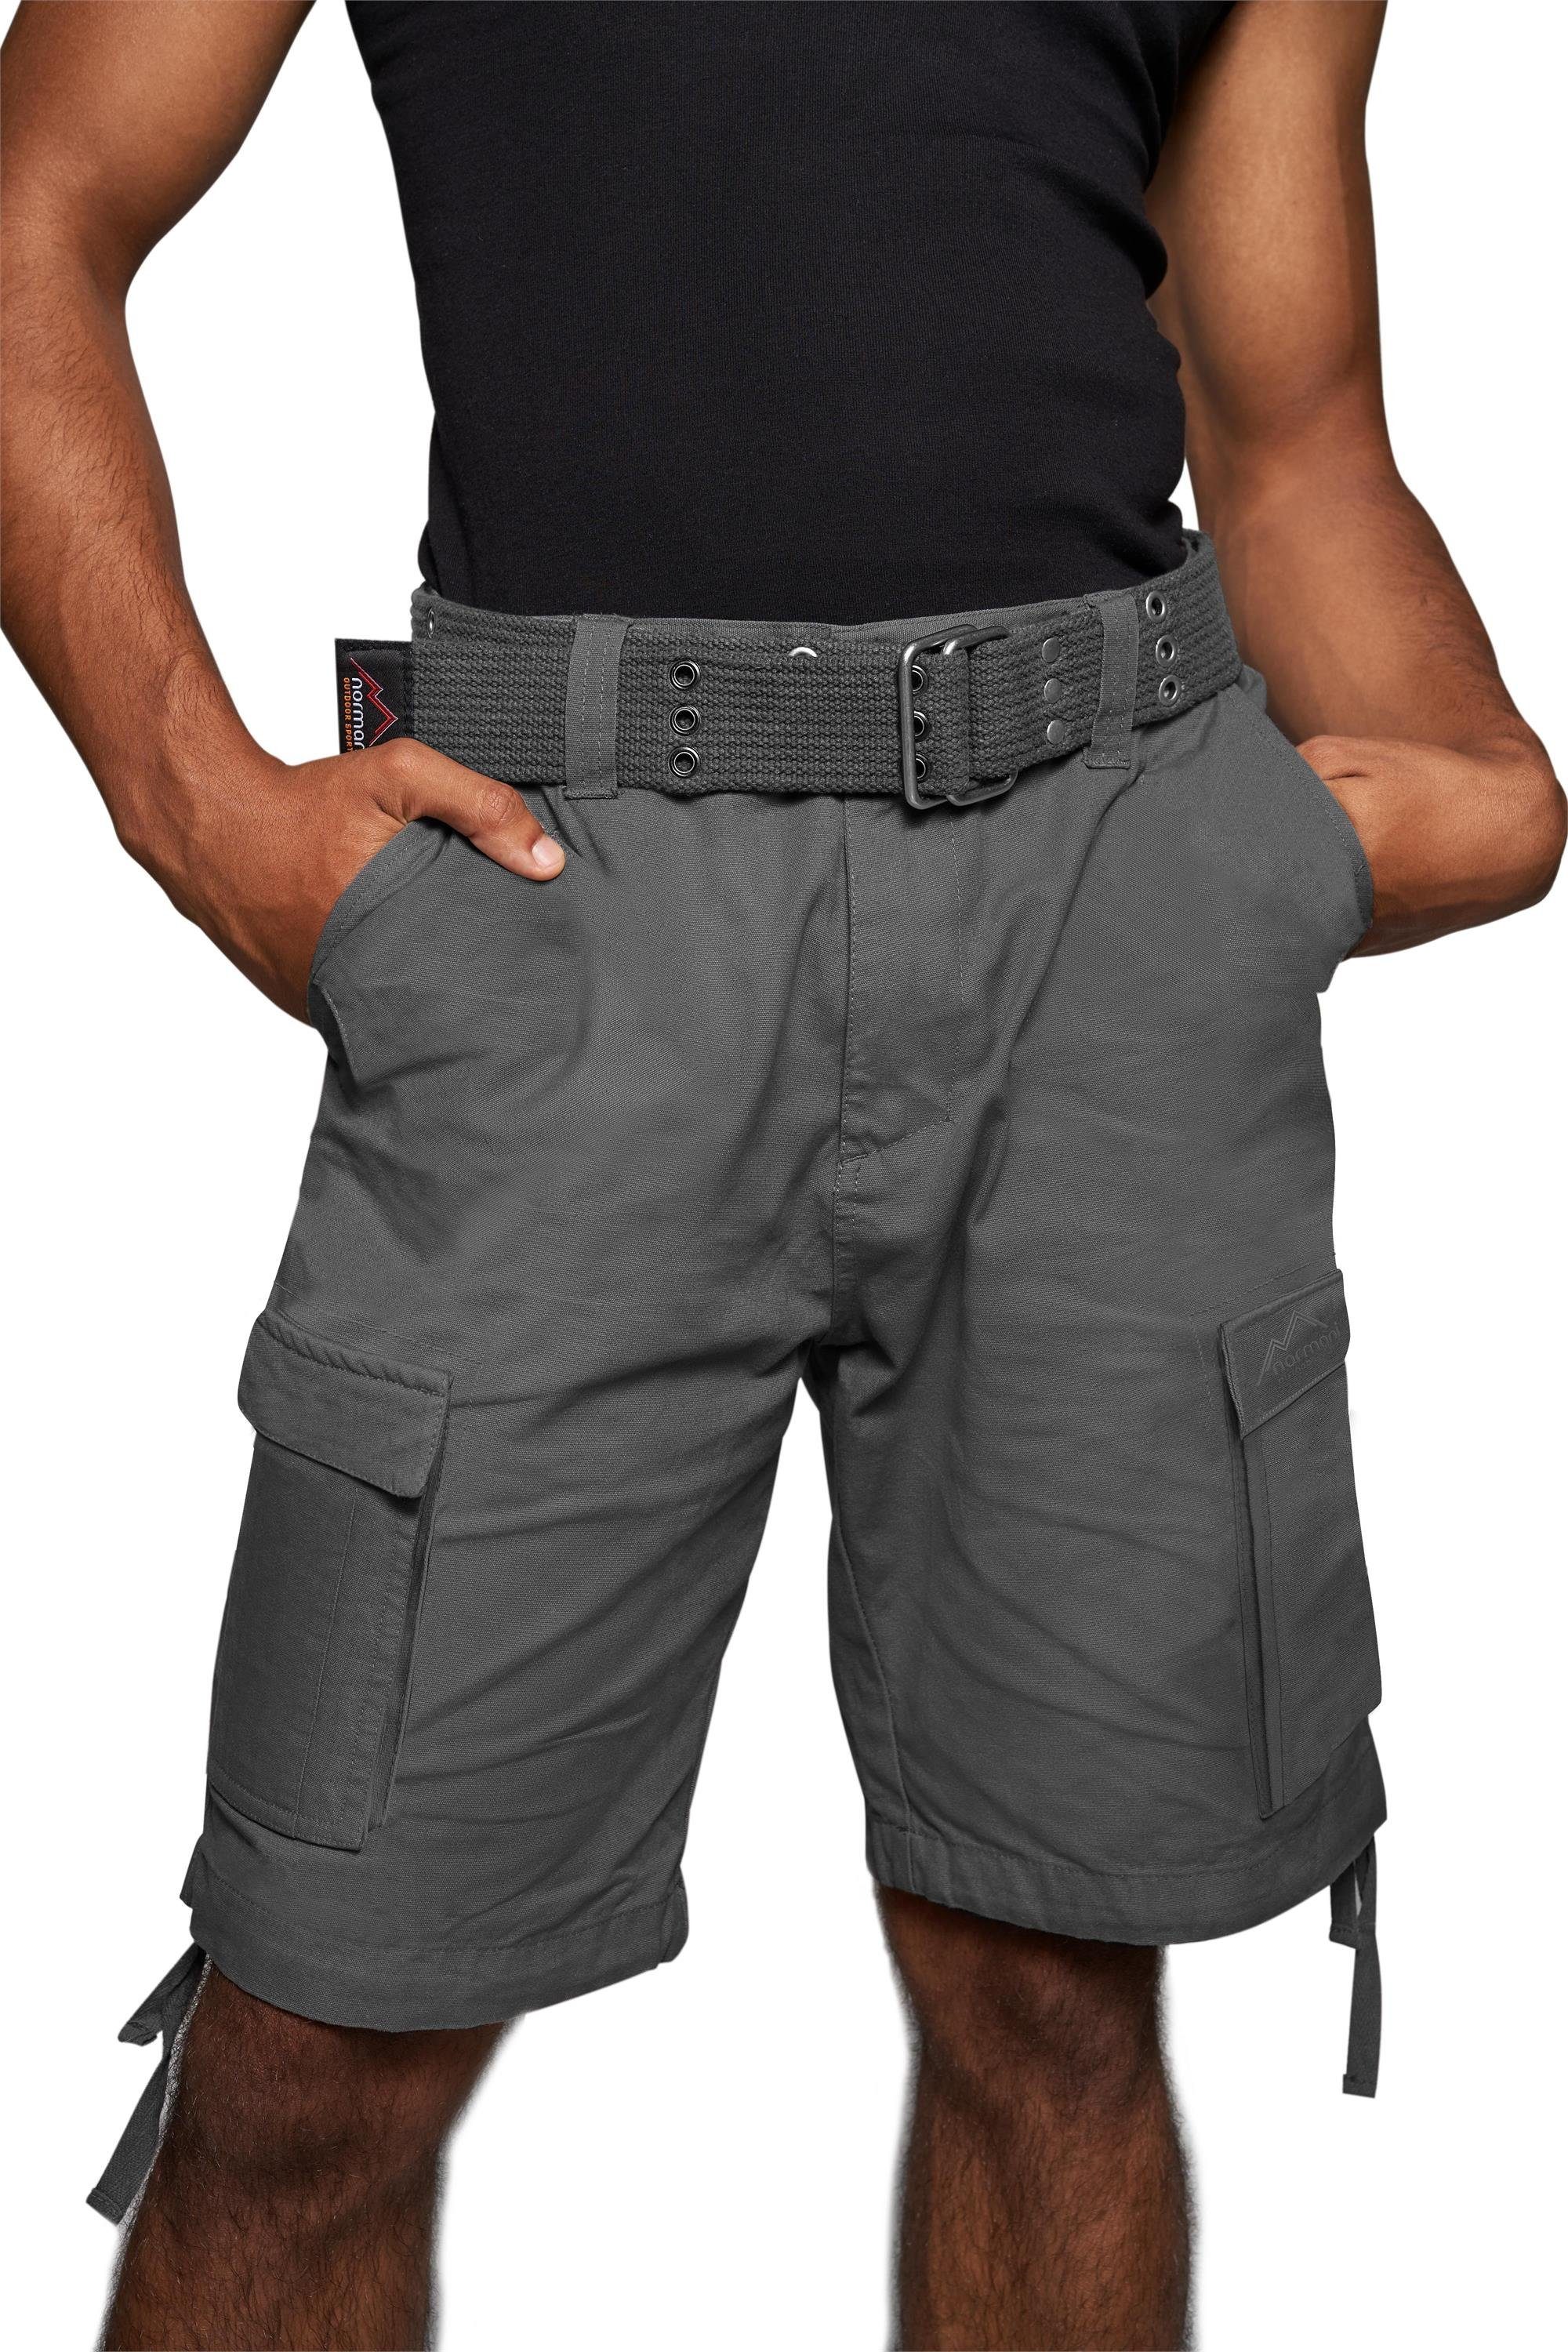 normani Bermudas Sommer-Shorts „Kalahari“ mit Gürtel „Wadi“ kurze Sommerhose Freizeithose Vintage-Shorts - 100% nachhaltige Bio-Baumwolle Anthrazit